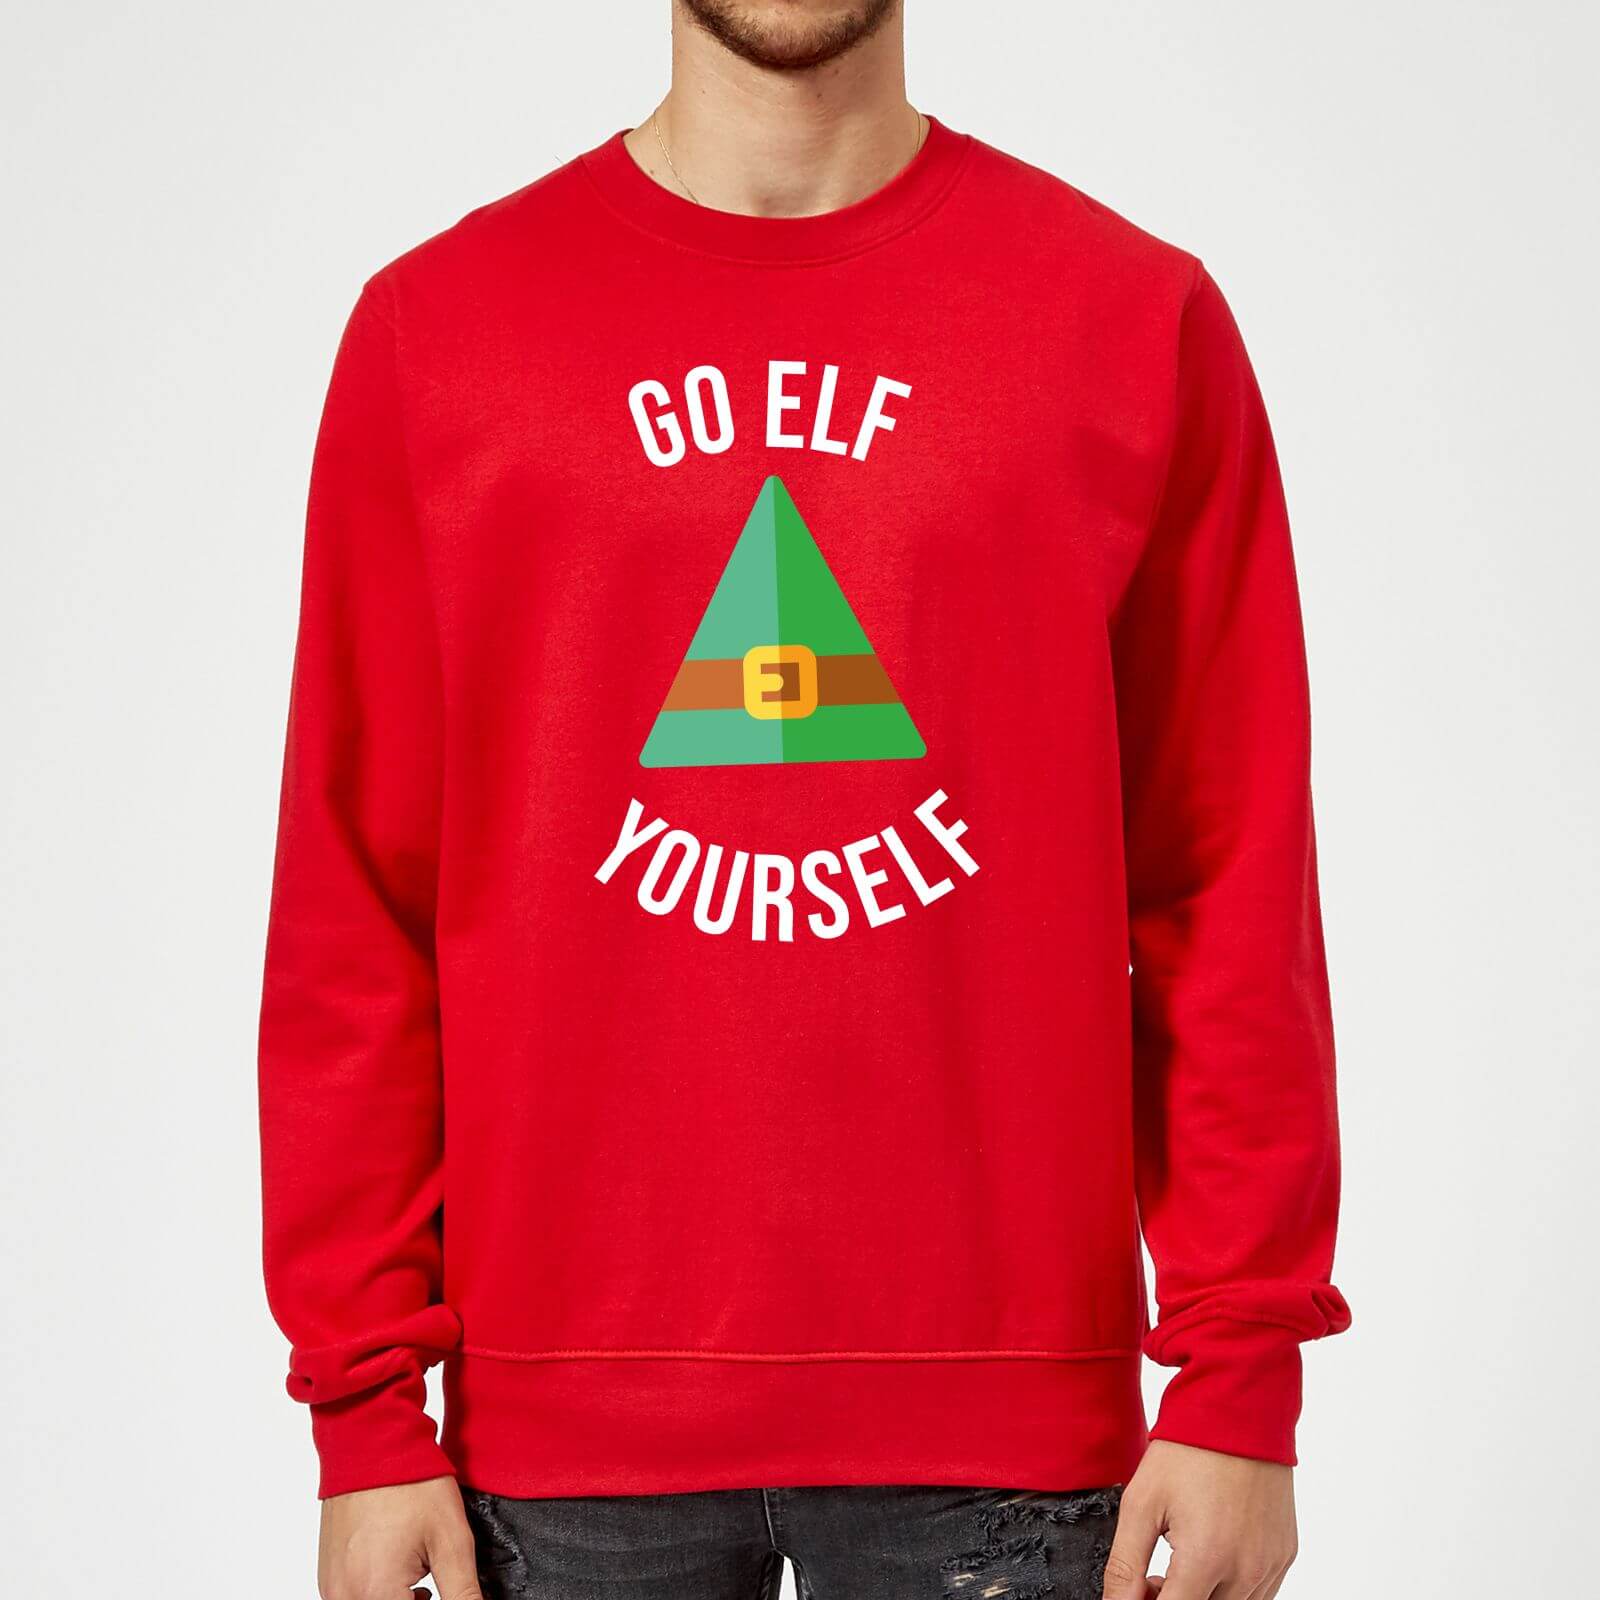 Go Elf Yourself Christmas Sweatshirt - Red - M